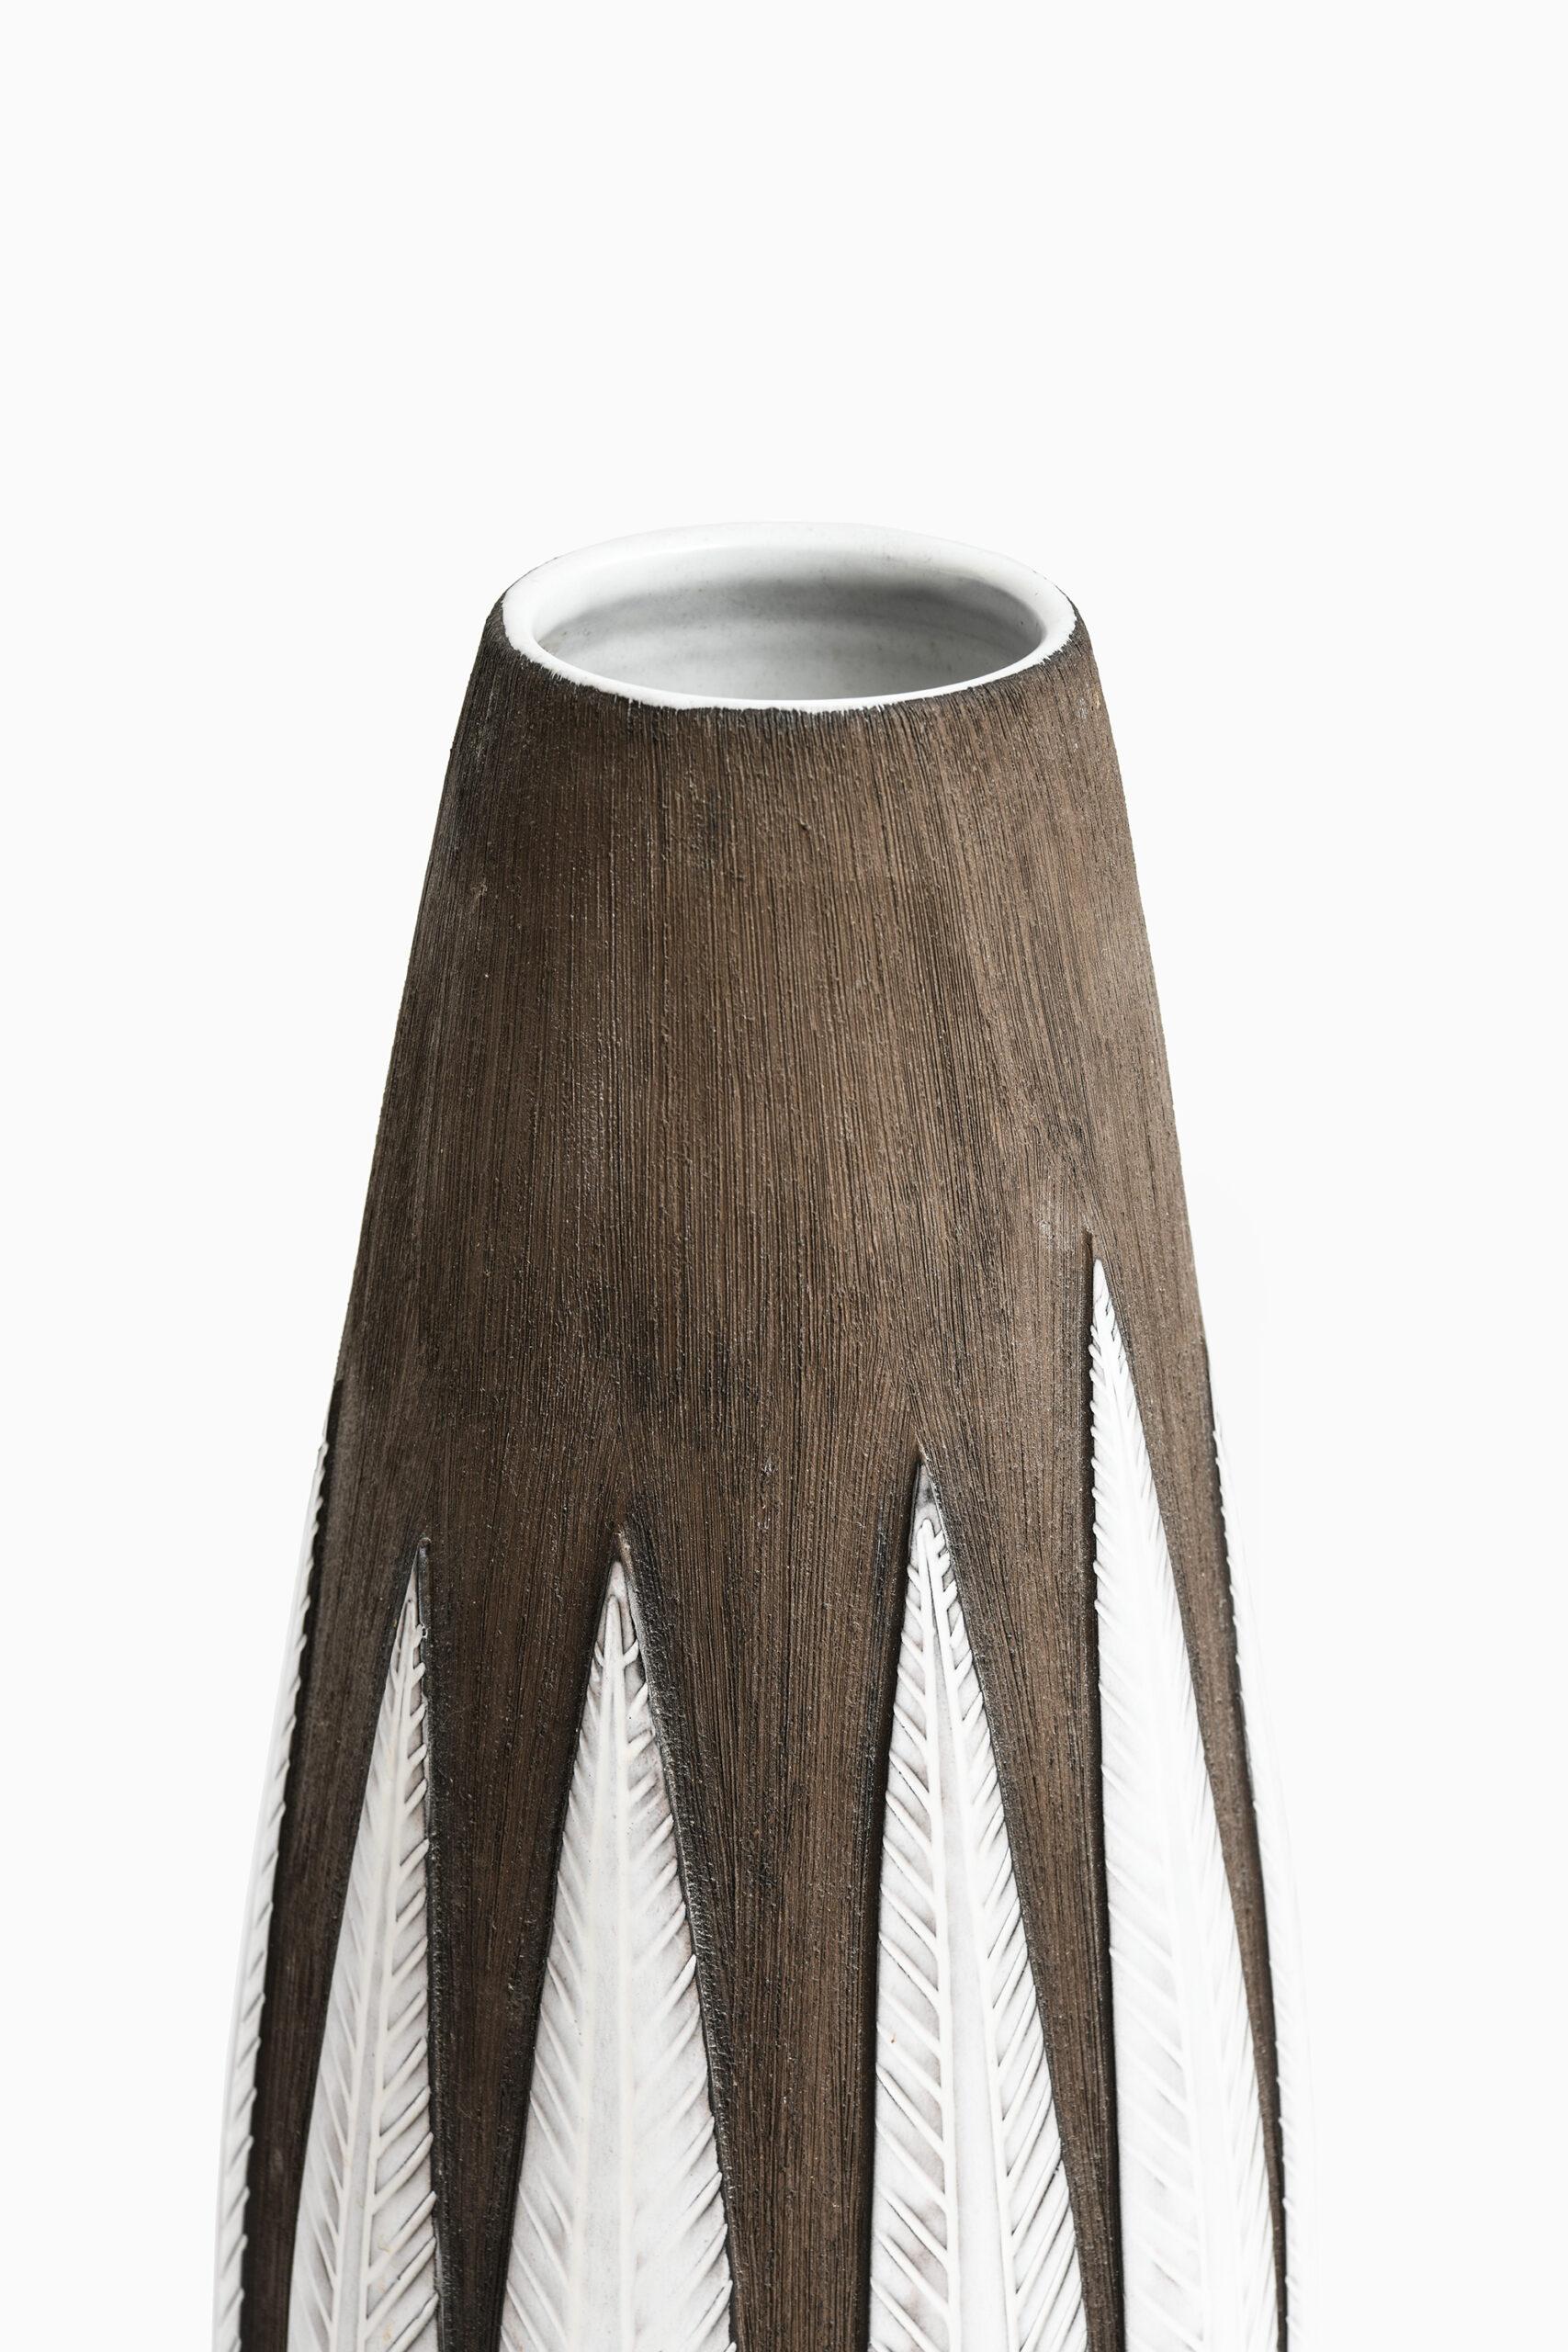 Grand vase de sol en céramique modèle Paprika conçu par Anna-Lisa Thomson. Produit par Upsala Ekeby en Suède.